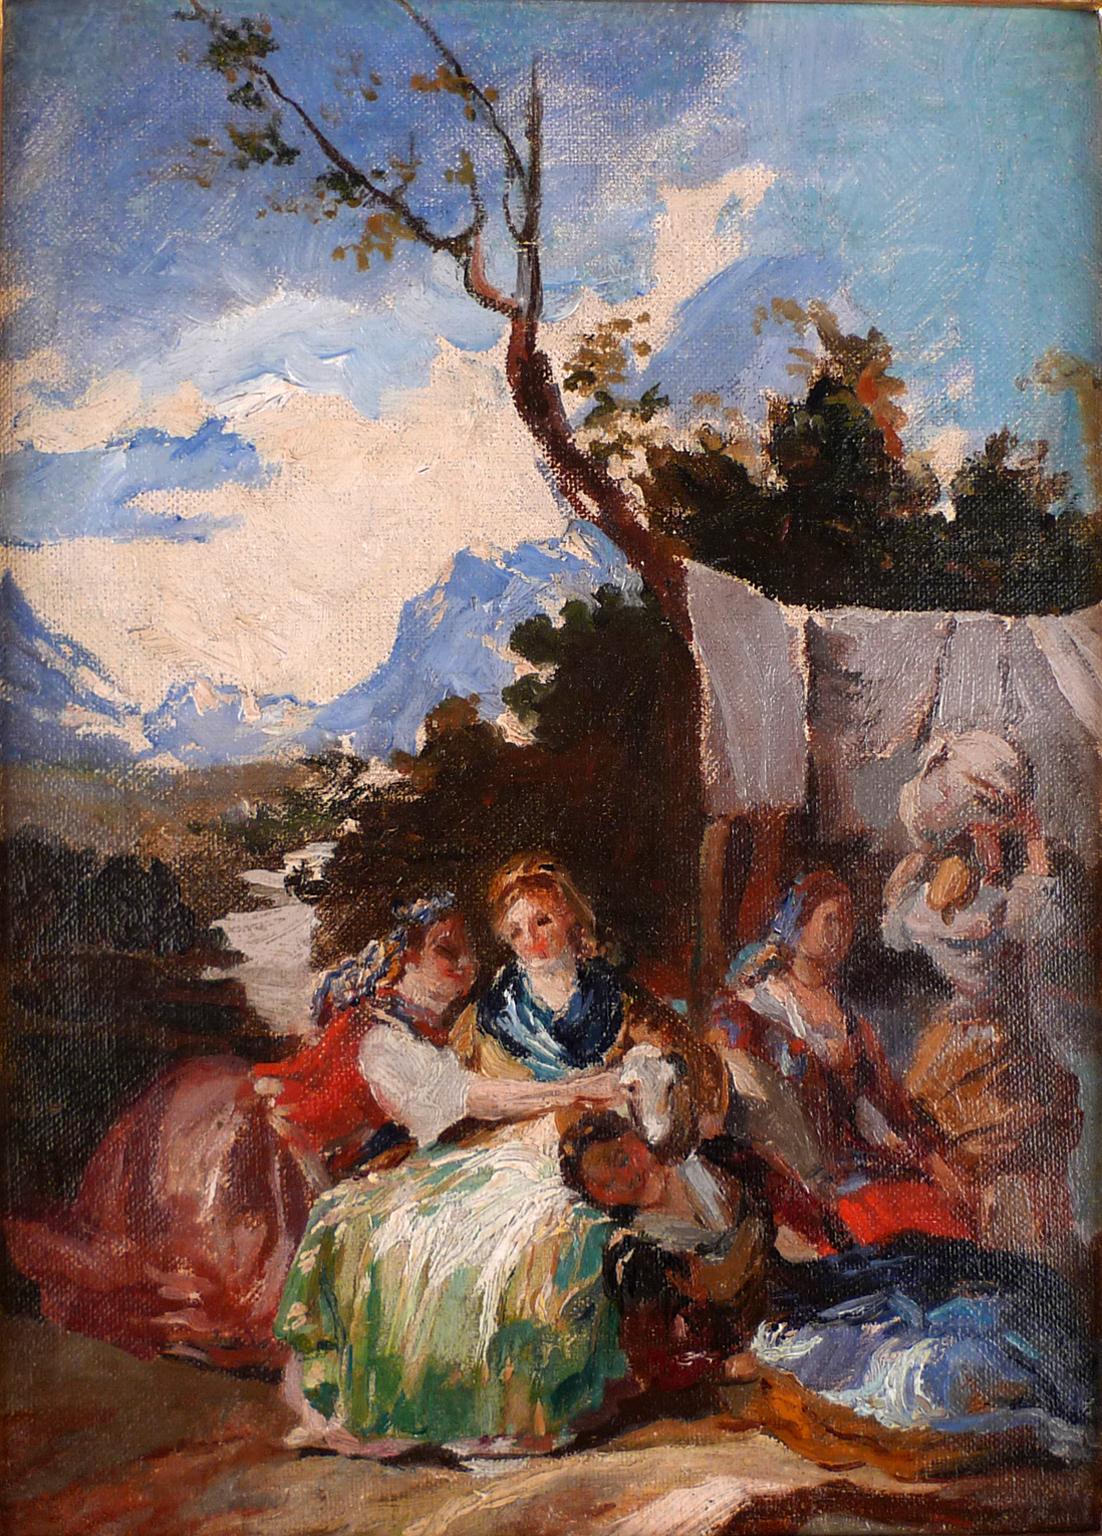 Landscape Painting Unknown - « Washerwomen », huile sur toile d'une école espagnole du XIXe siècle représentant des femmes laves au travail